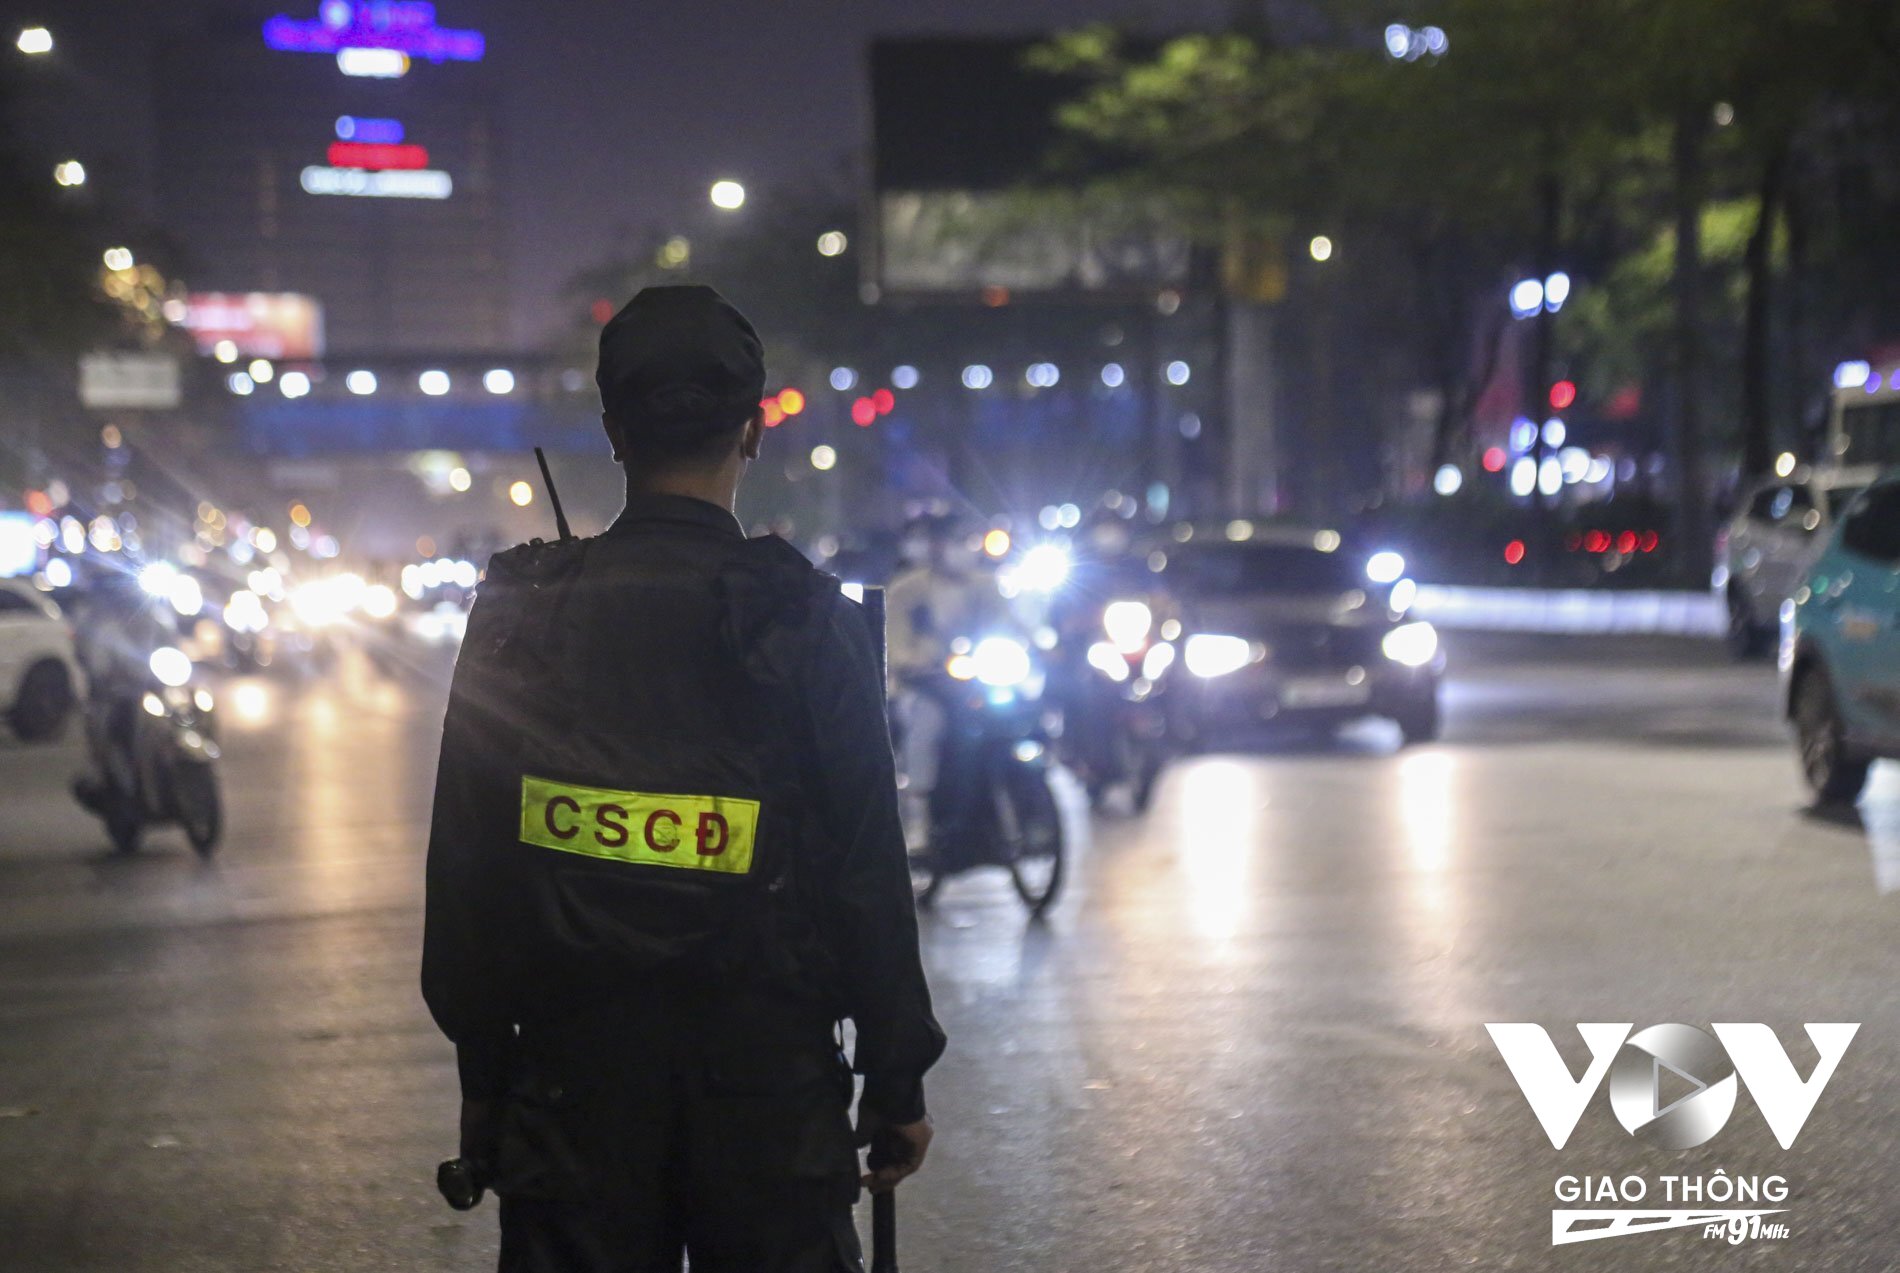 Đúng 21h30, nhiều tổ Cảnh sát 141 hóa trang mật phục kết hợp lập chốt công khai bắt đầu làm nhiệm vụ.